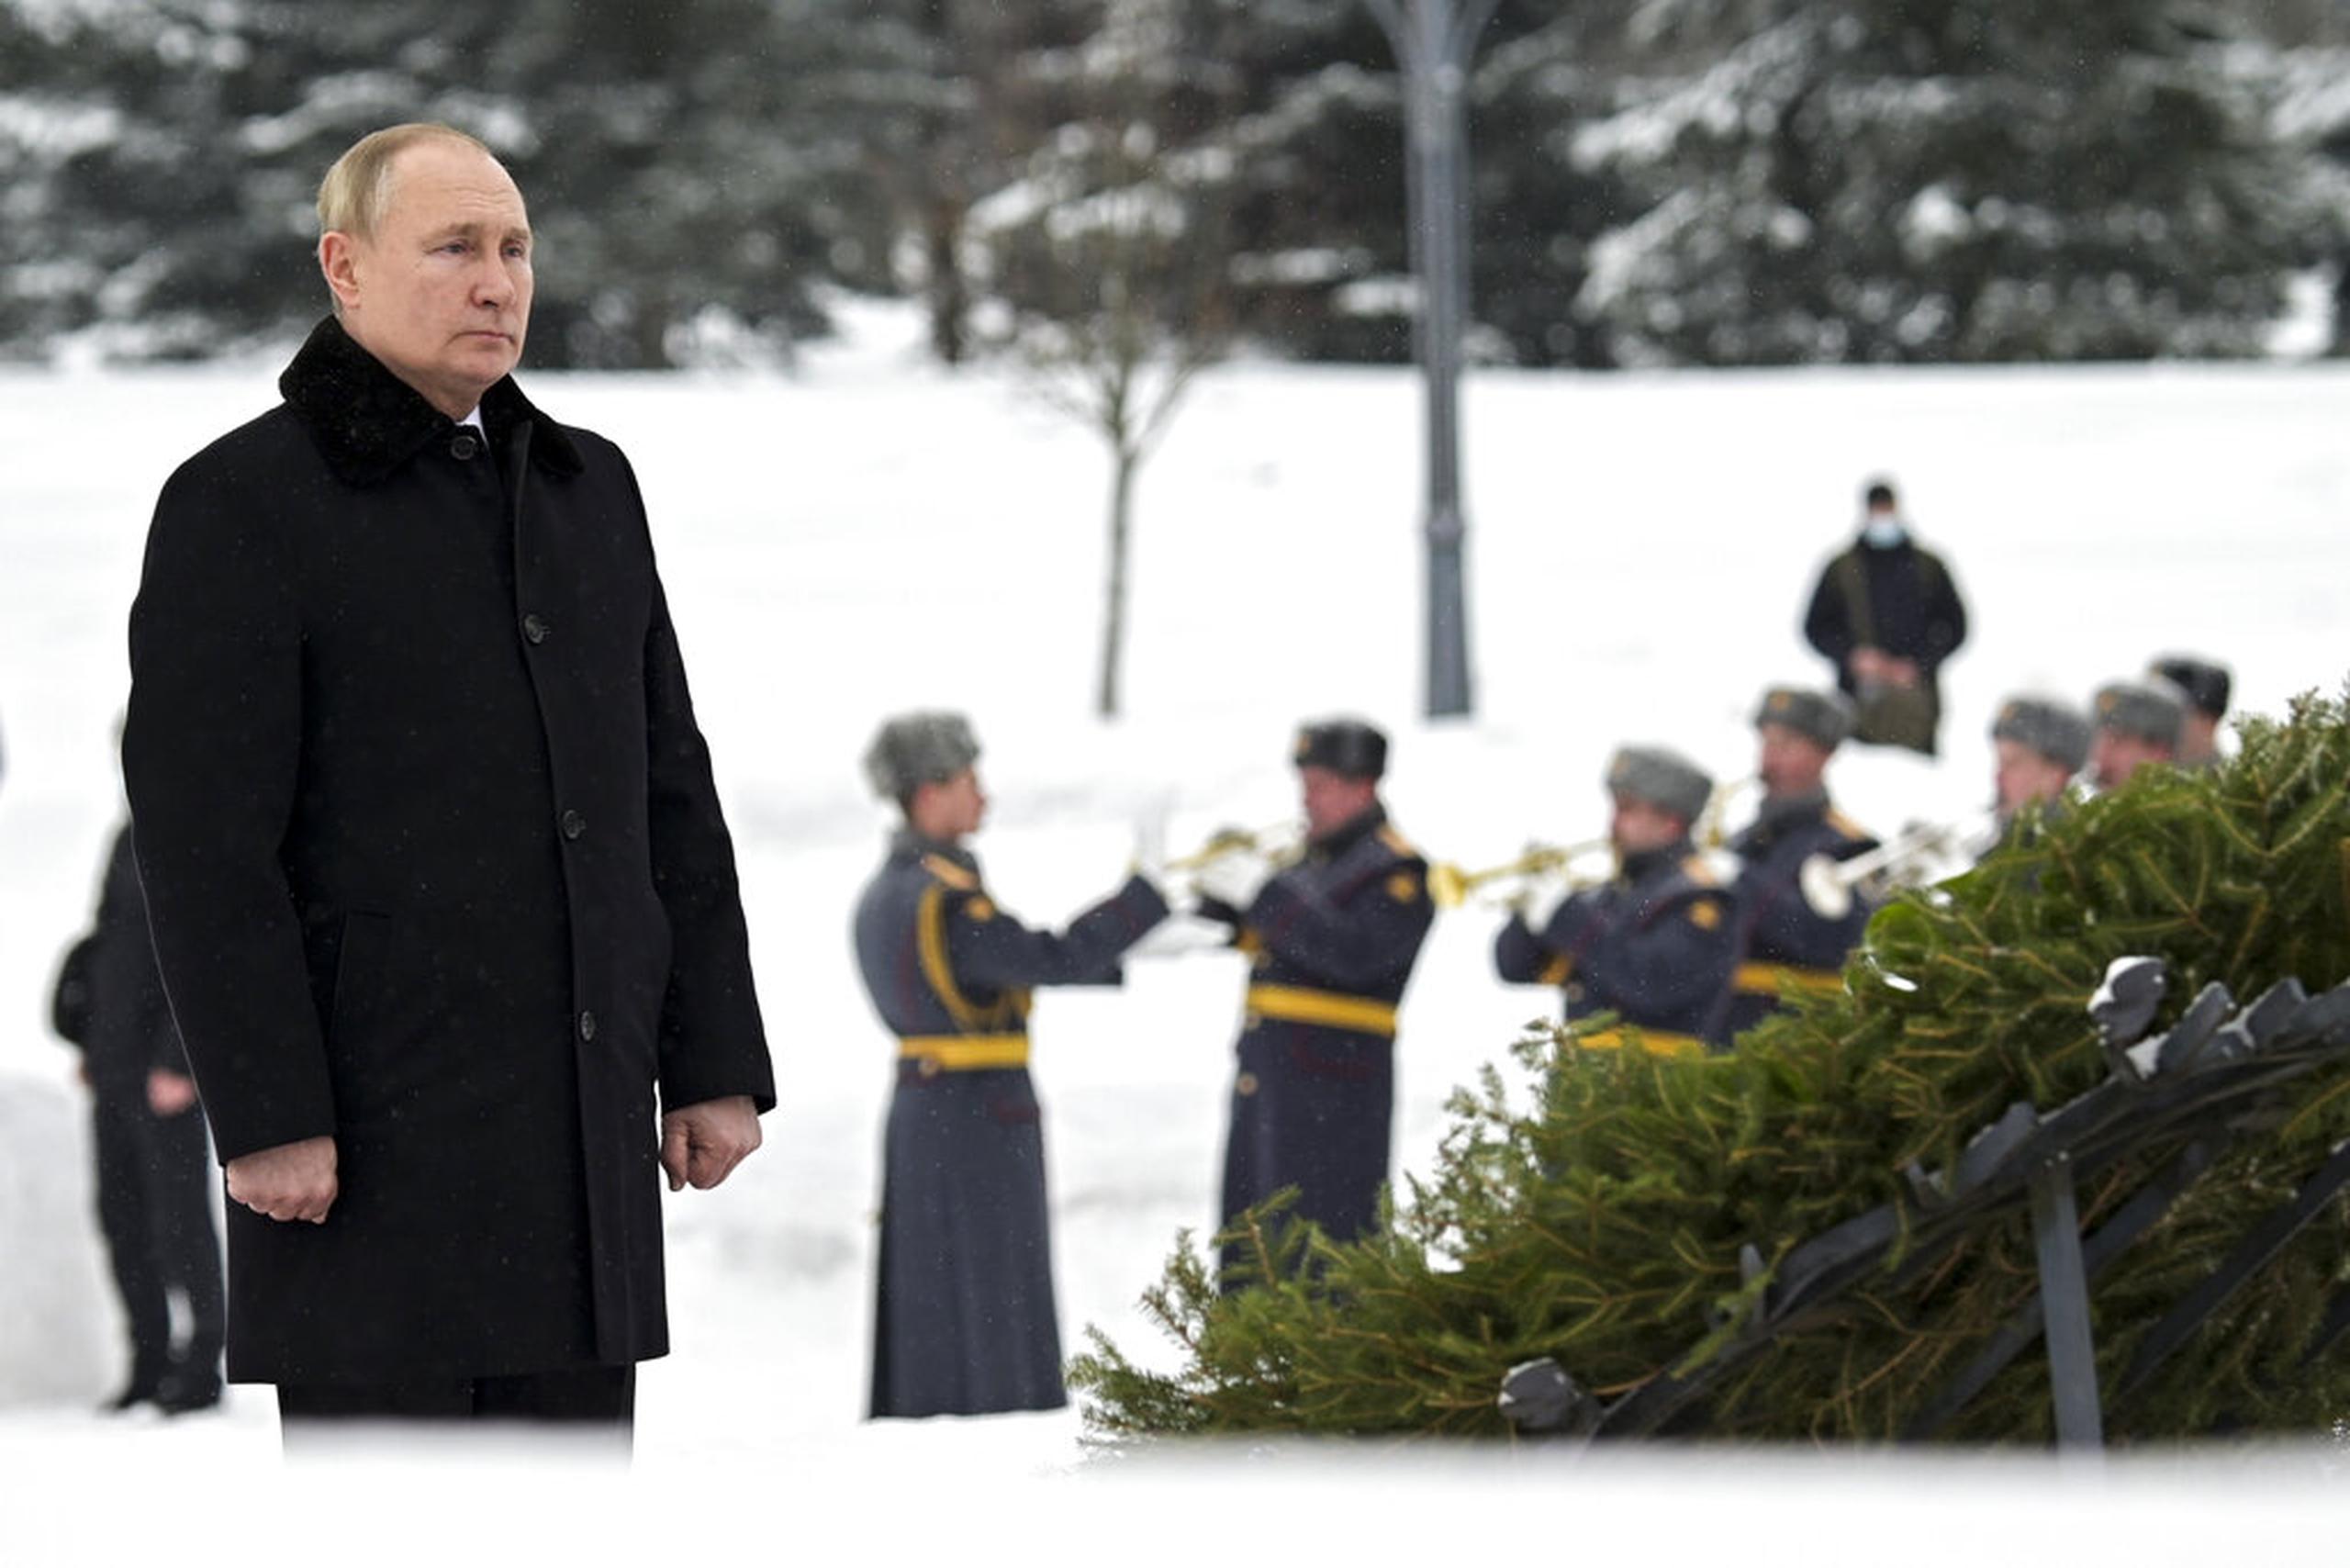 El presidente ruso Vladimir Putin asiste a una ceremonia conmemorativa de colocación de una ofrenda floral en el cementerio de Piskaryovskoye, donde fueron enterradas la mayoría de las víctimas del asedio de Leningrado durante la Segunda Guerra Mundial, en San Petersburgo, Rusia, el 27 de enero de 2022.